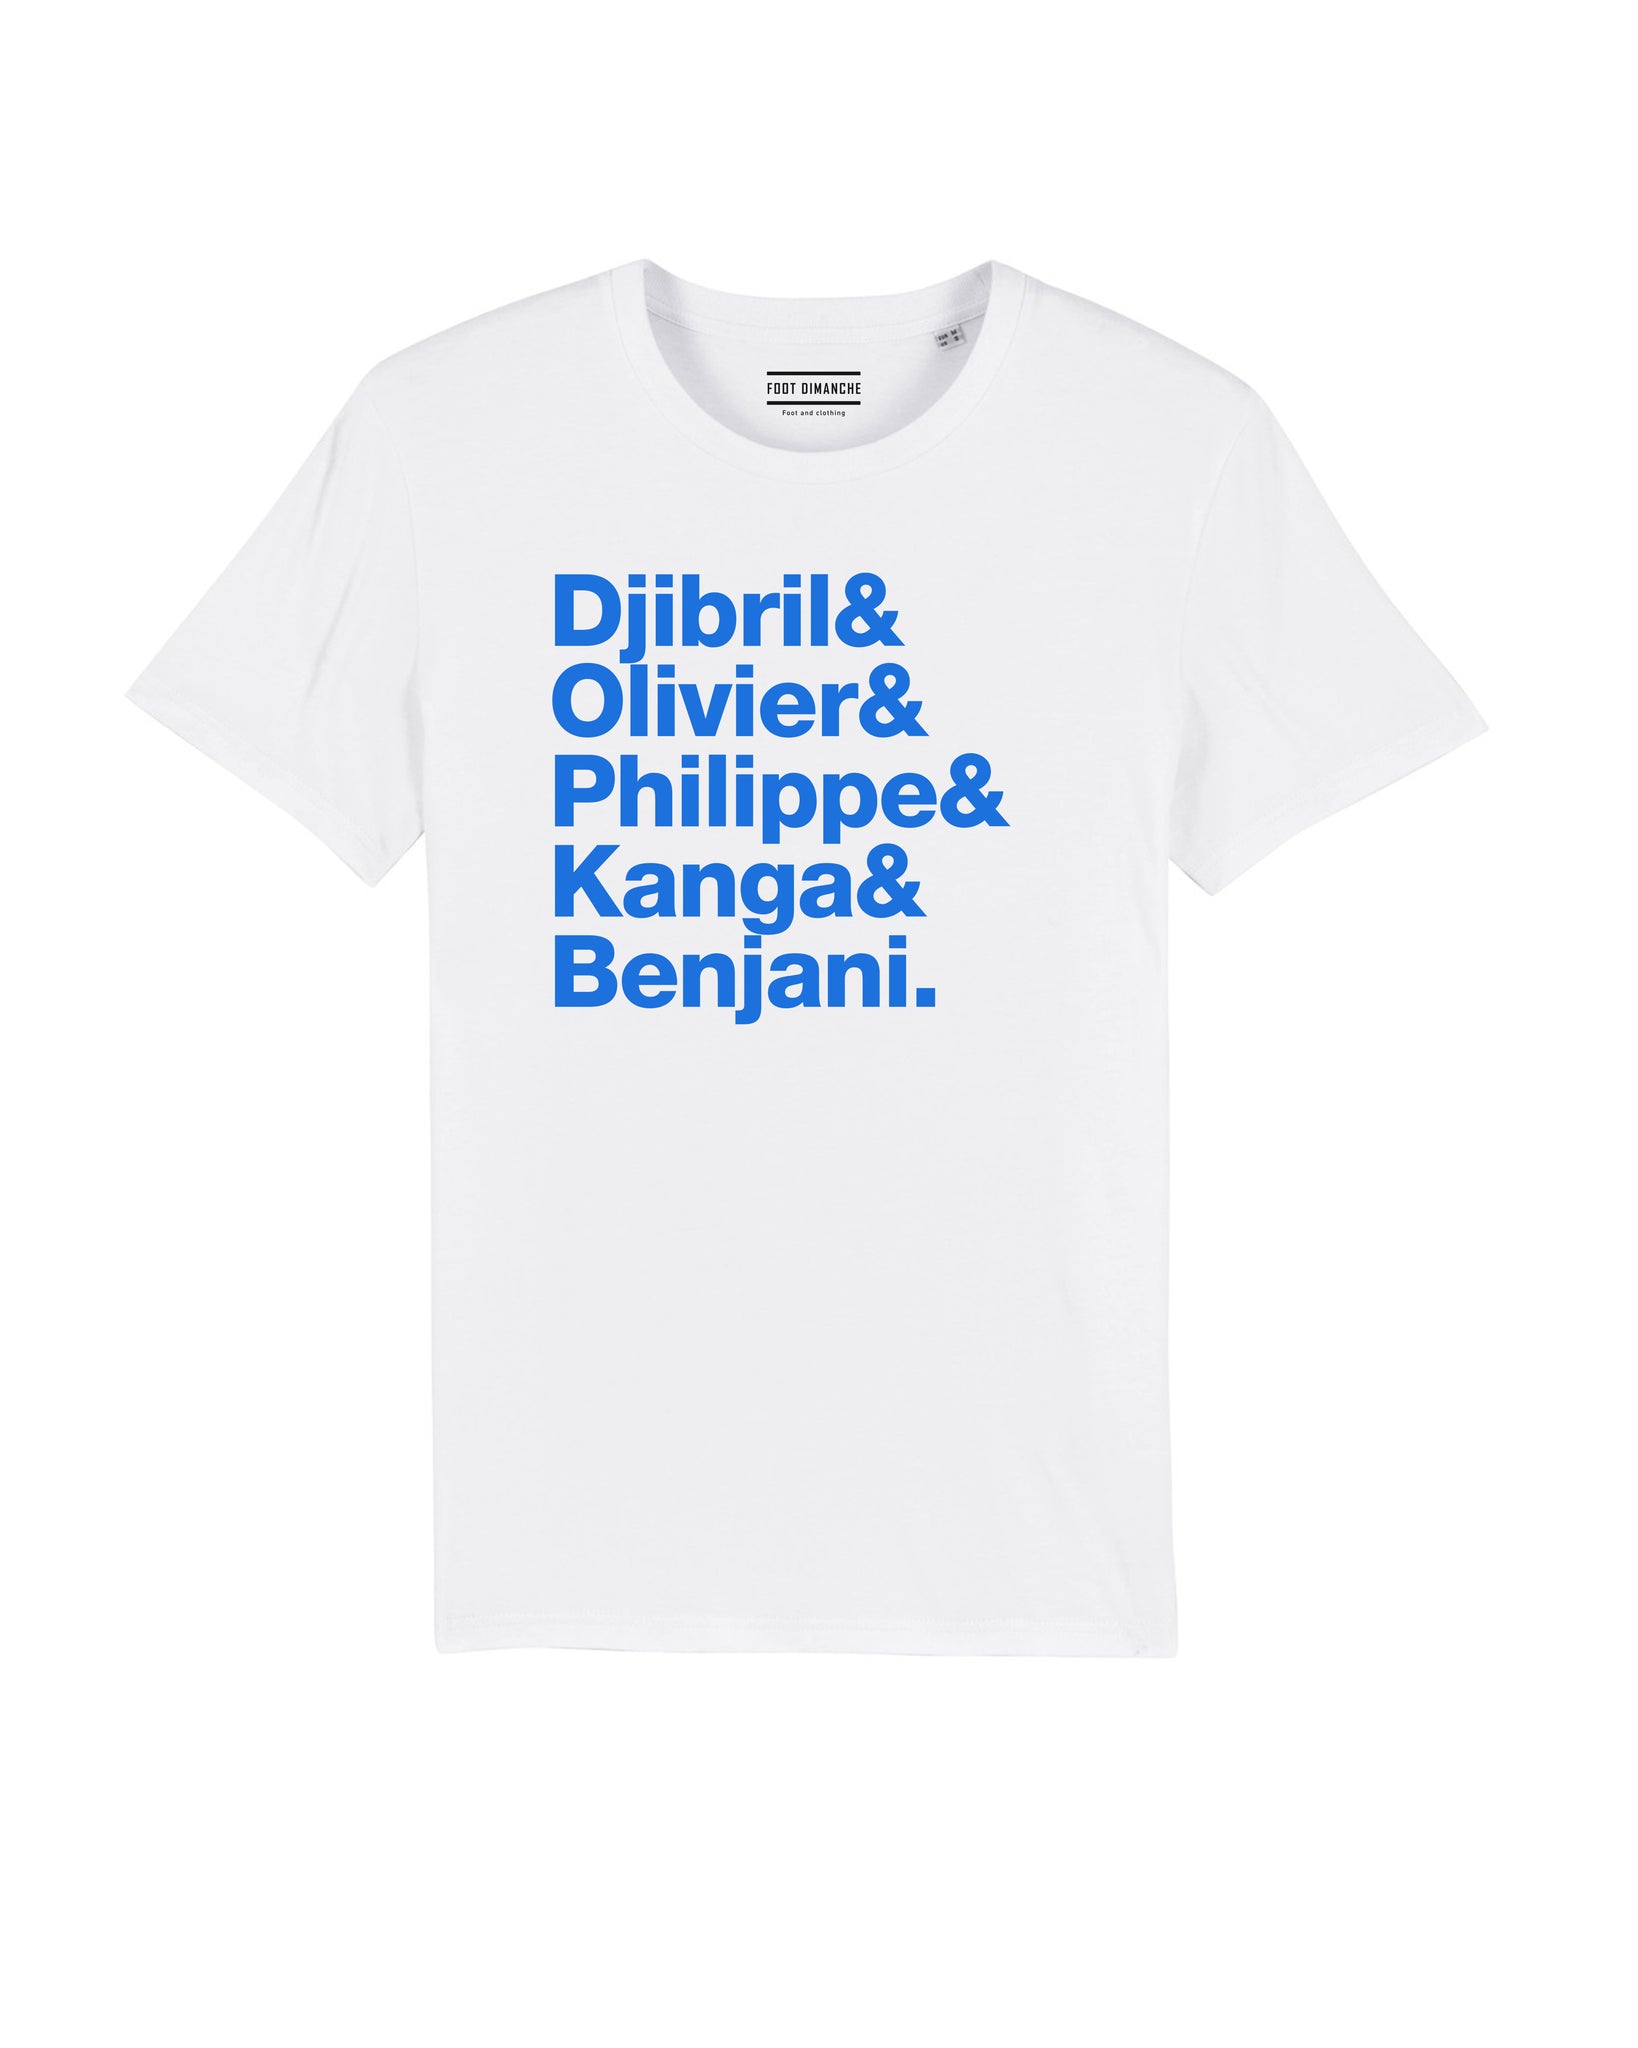 Tee Shirt Génération Djibril Cisse Auxerre - Foot DimancheTee Shirt Génération Djibril Cisse Auxerre - Foot Dimanche